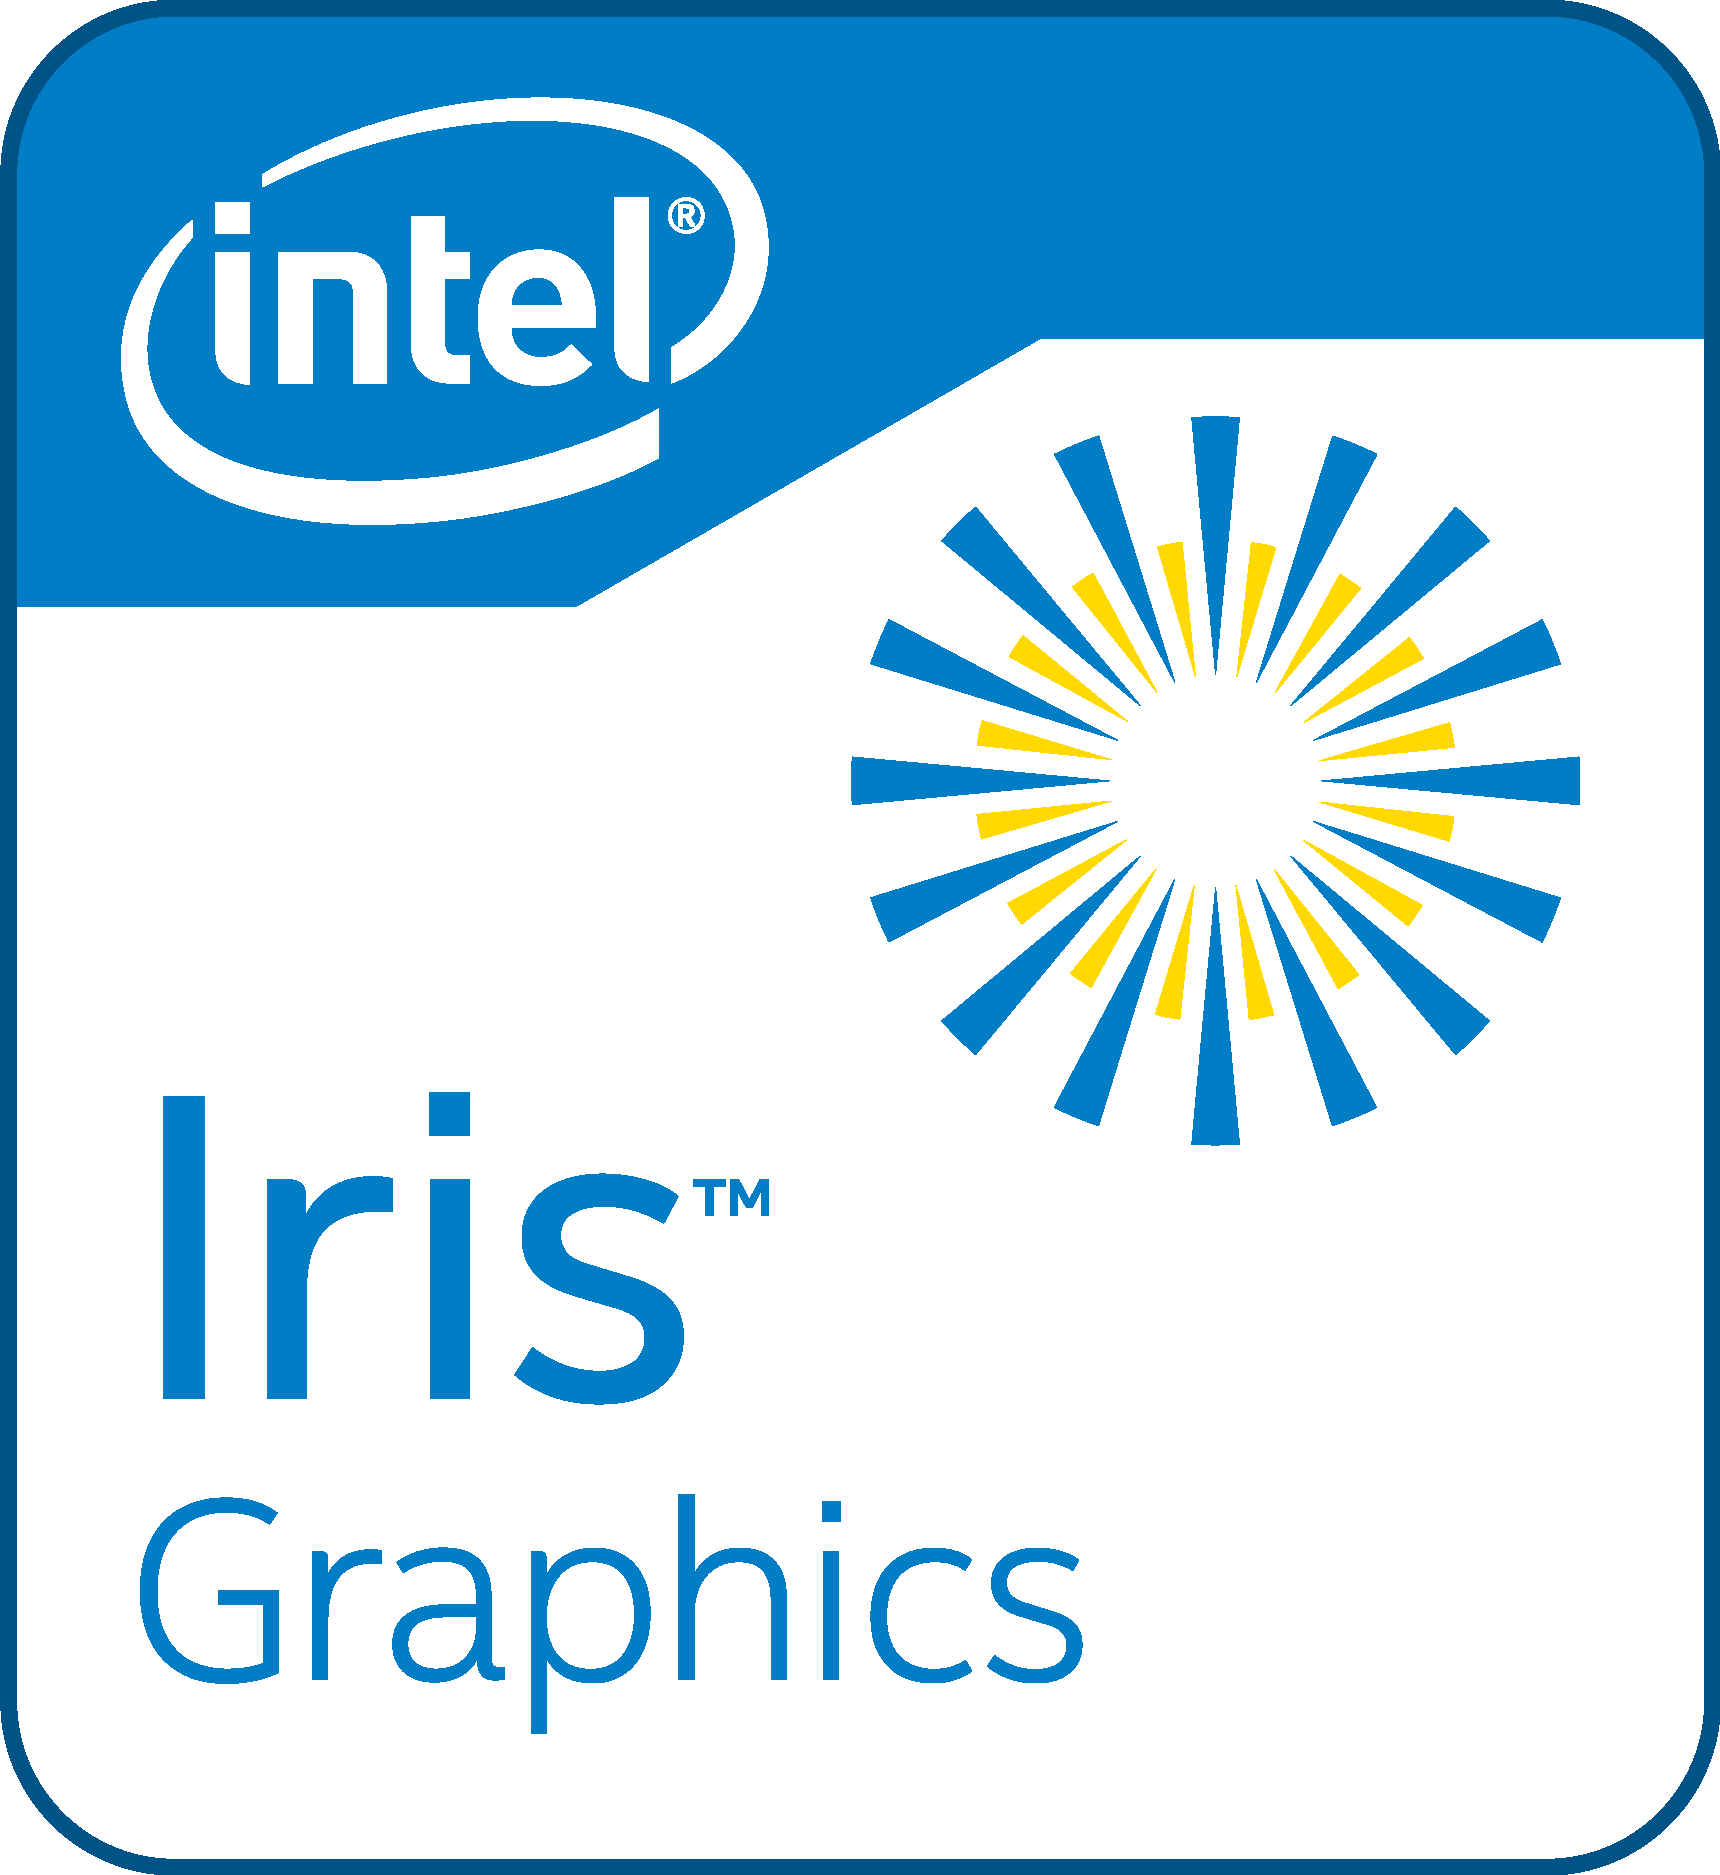 Arc iris graphics. Intel Iris Graphics. Intel Iris Pro. Iris Pro Graphics. Intel Iris xe Graphics.